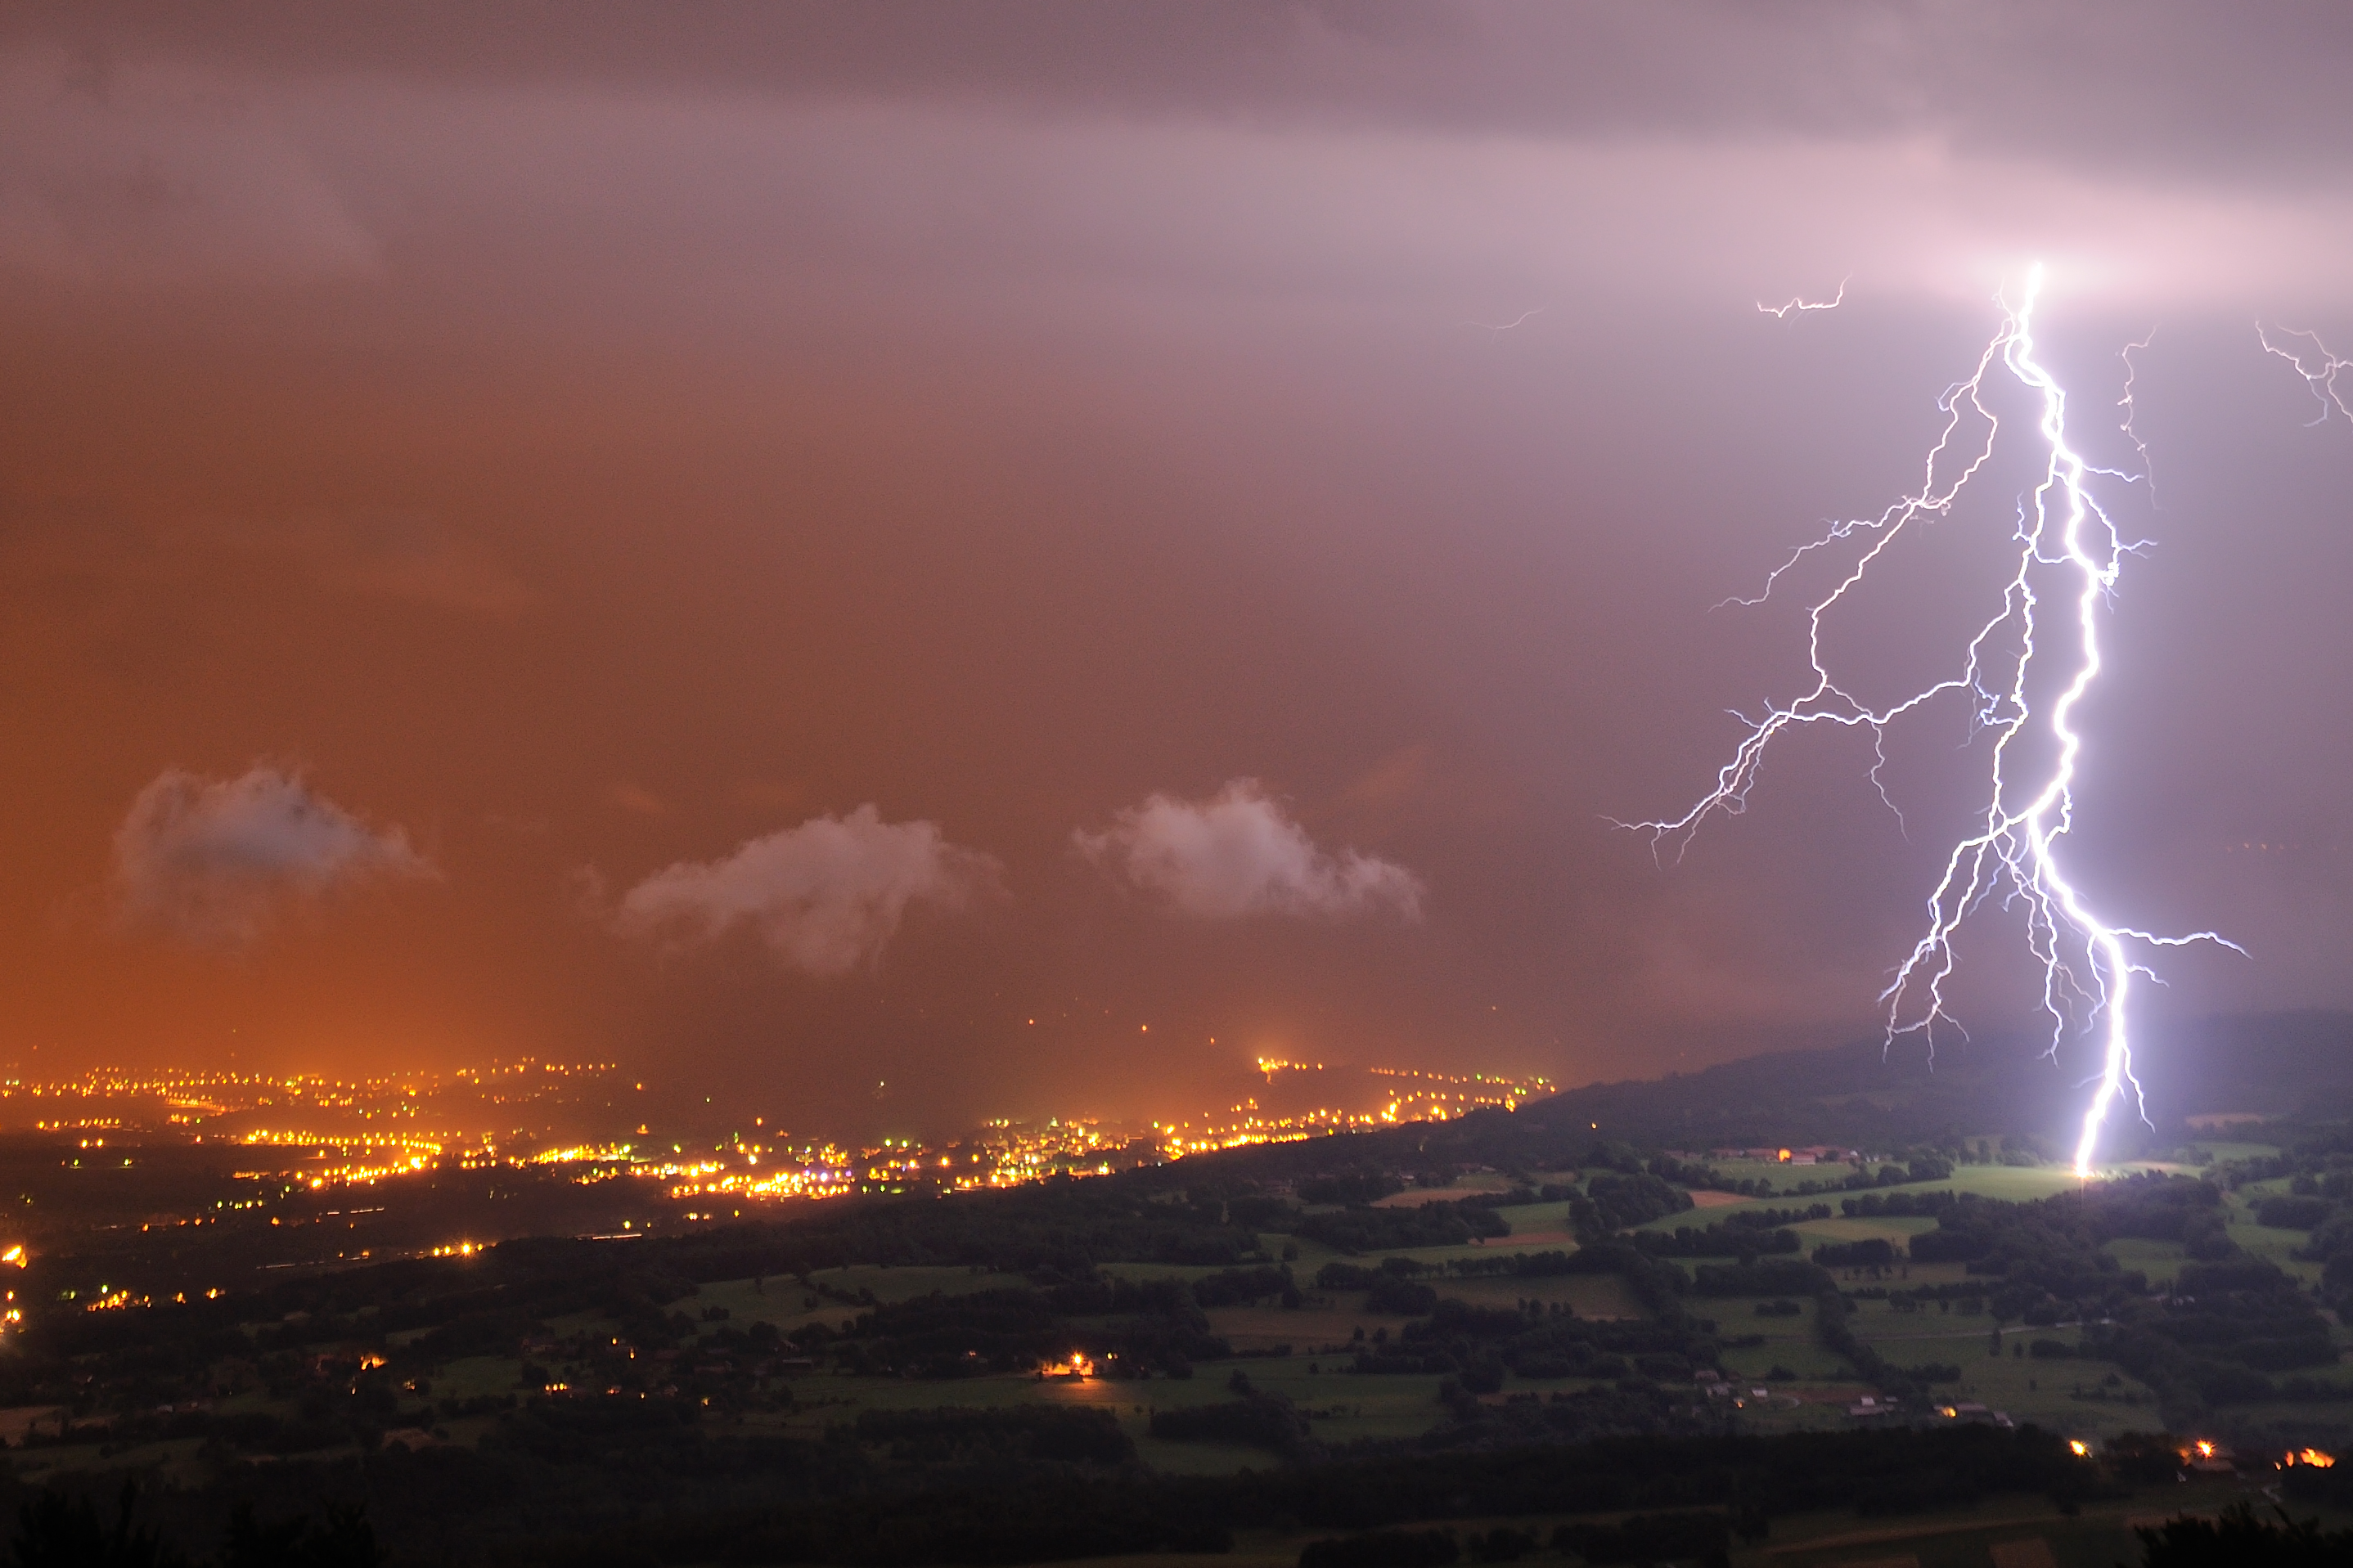 A storm in Haute-Savoie by Christophe Suarez @suarezphoto